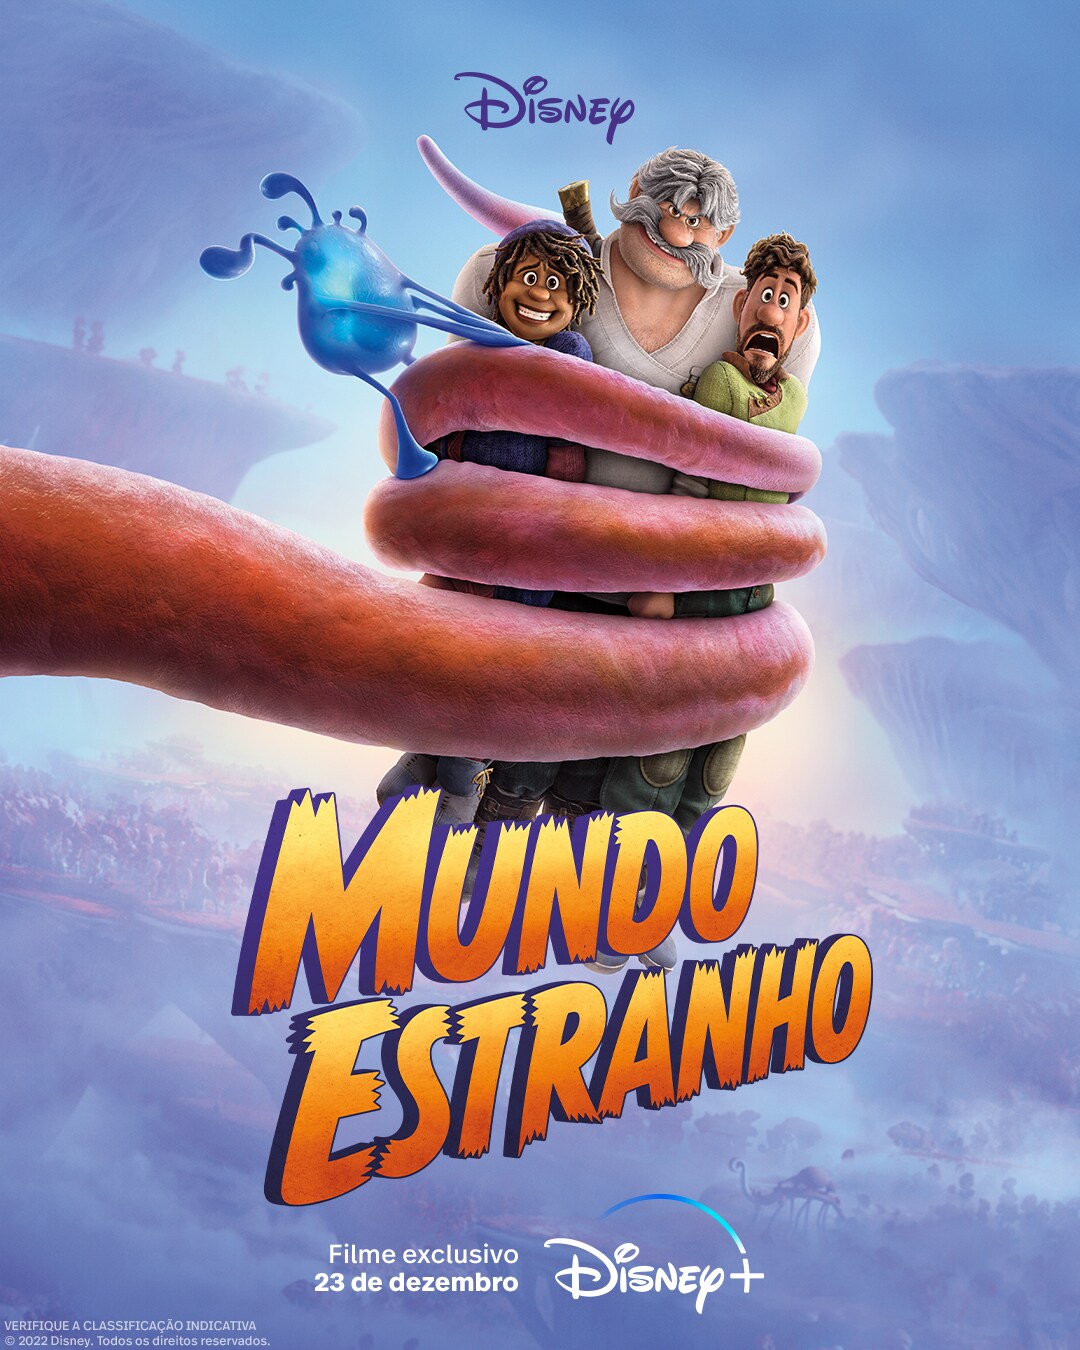 Quando estreia 'Mundo Estranho' no Disney+ | Disney Brasil